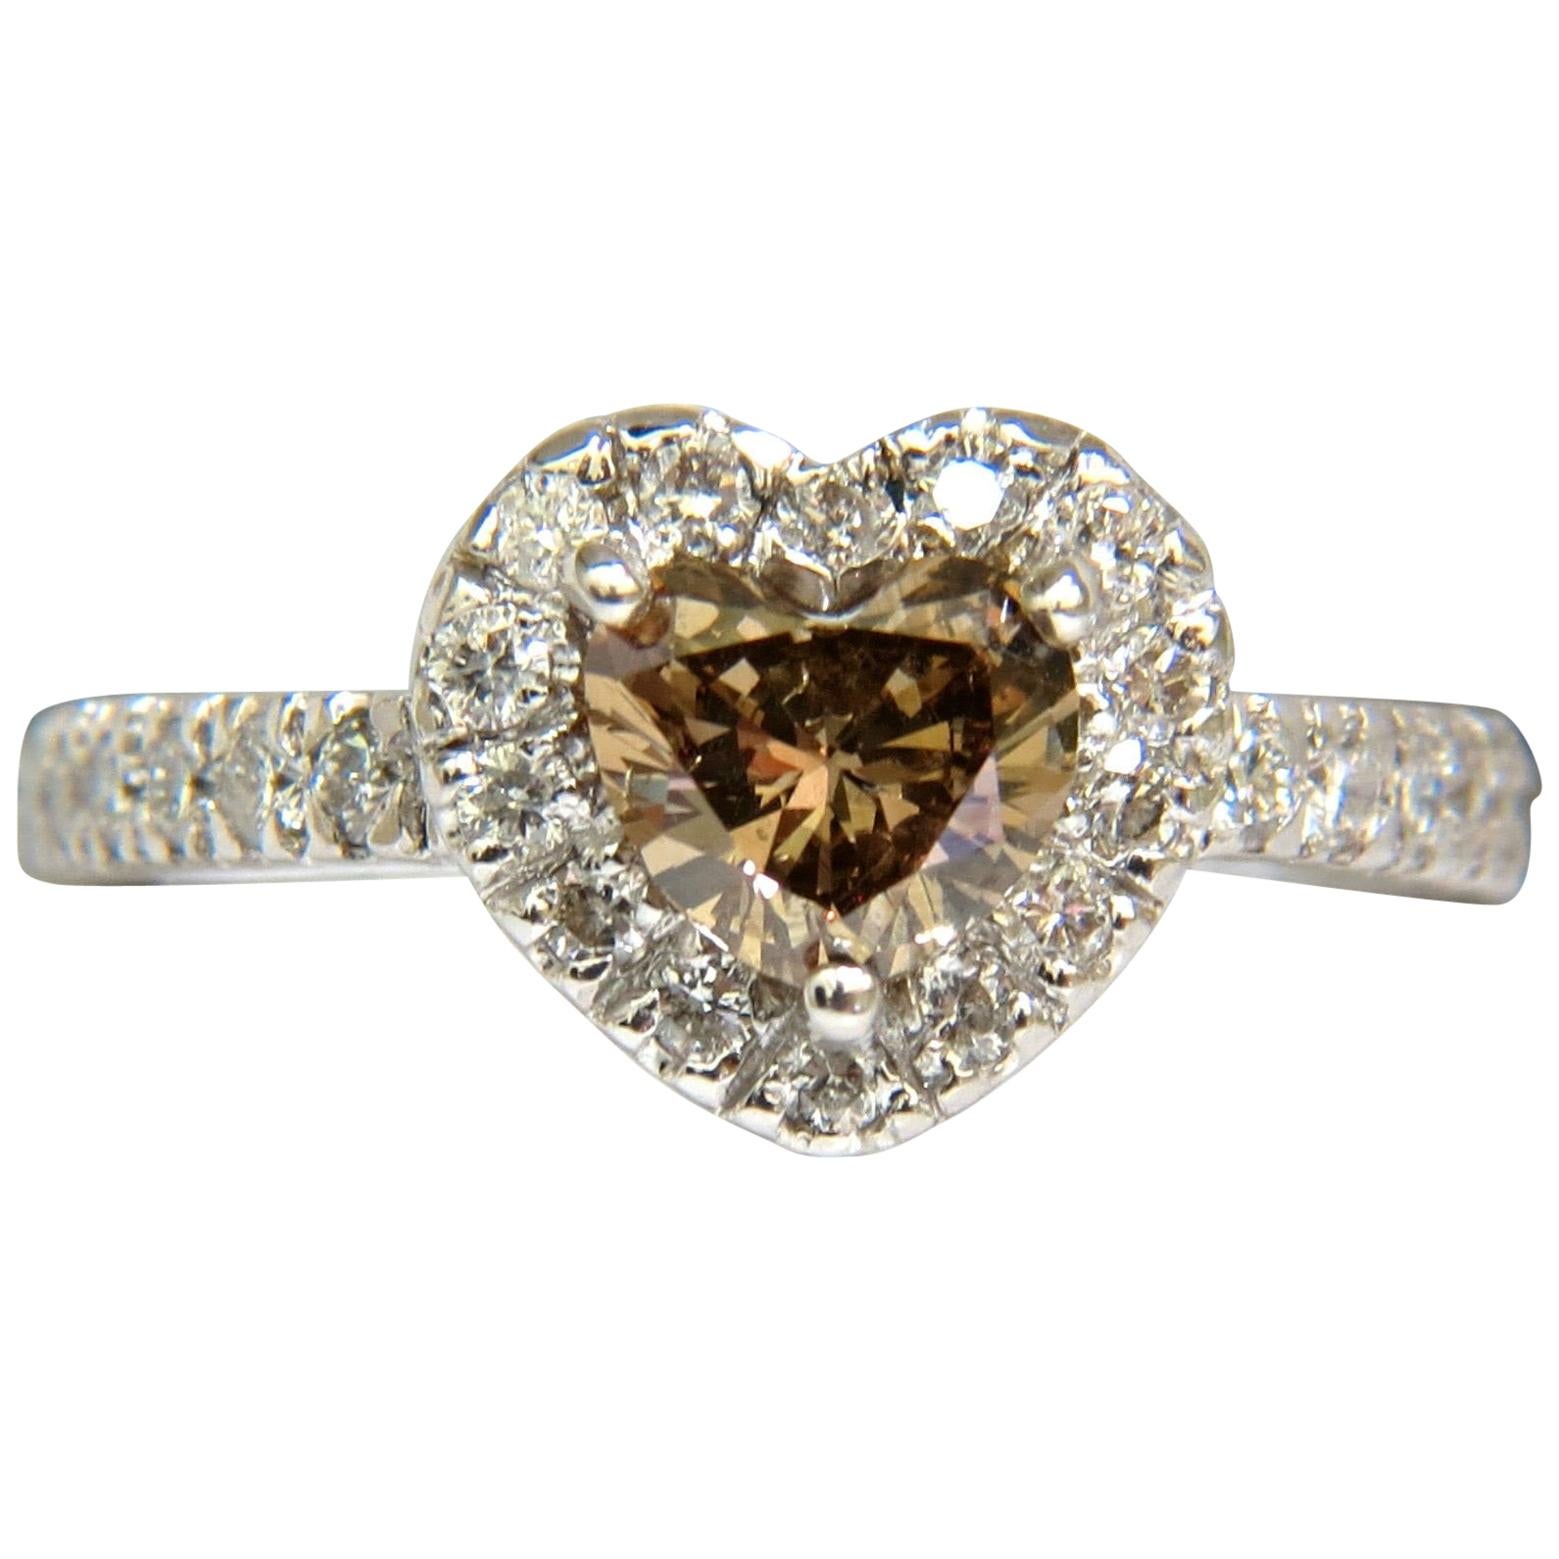 Bague en or 14 carats avec diamants taille cœur brun vif de 1,37 carat de couleur naturelle et halo de diamants taille cœur VS